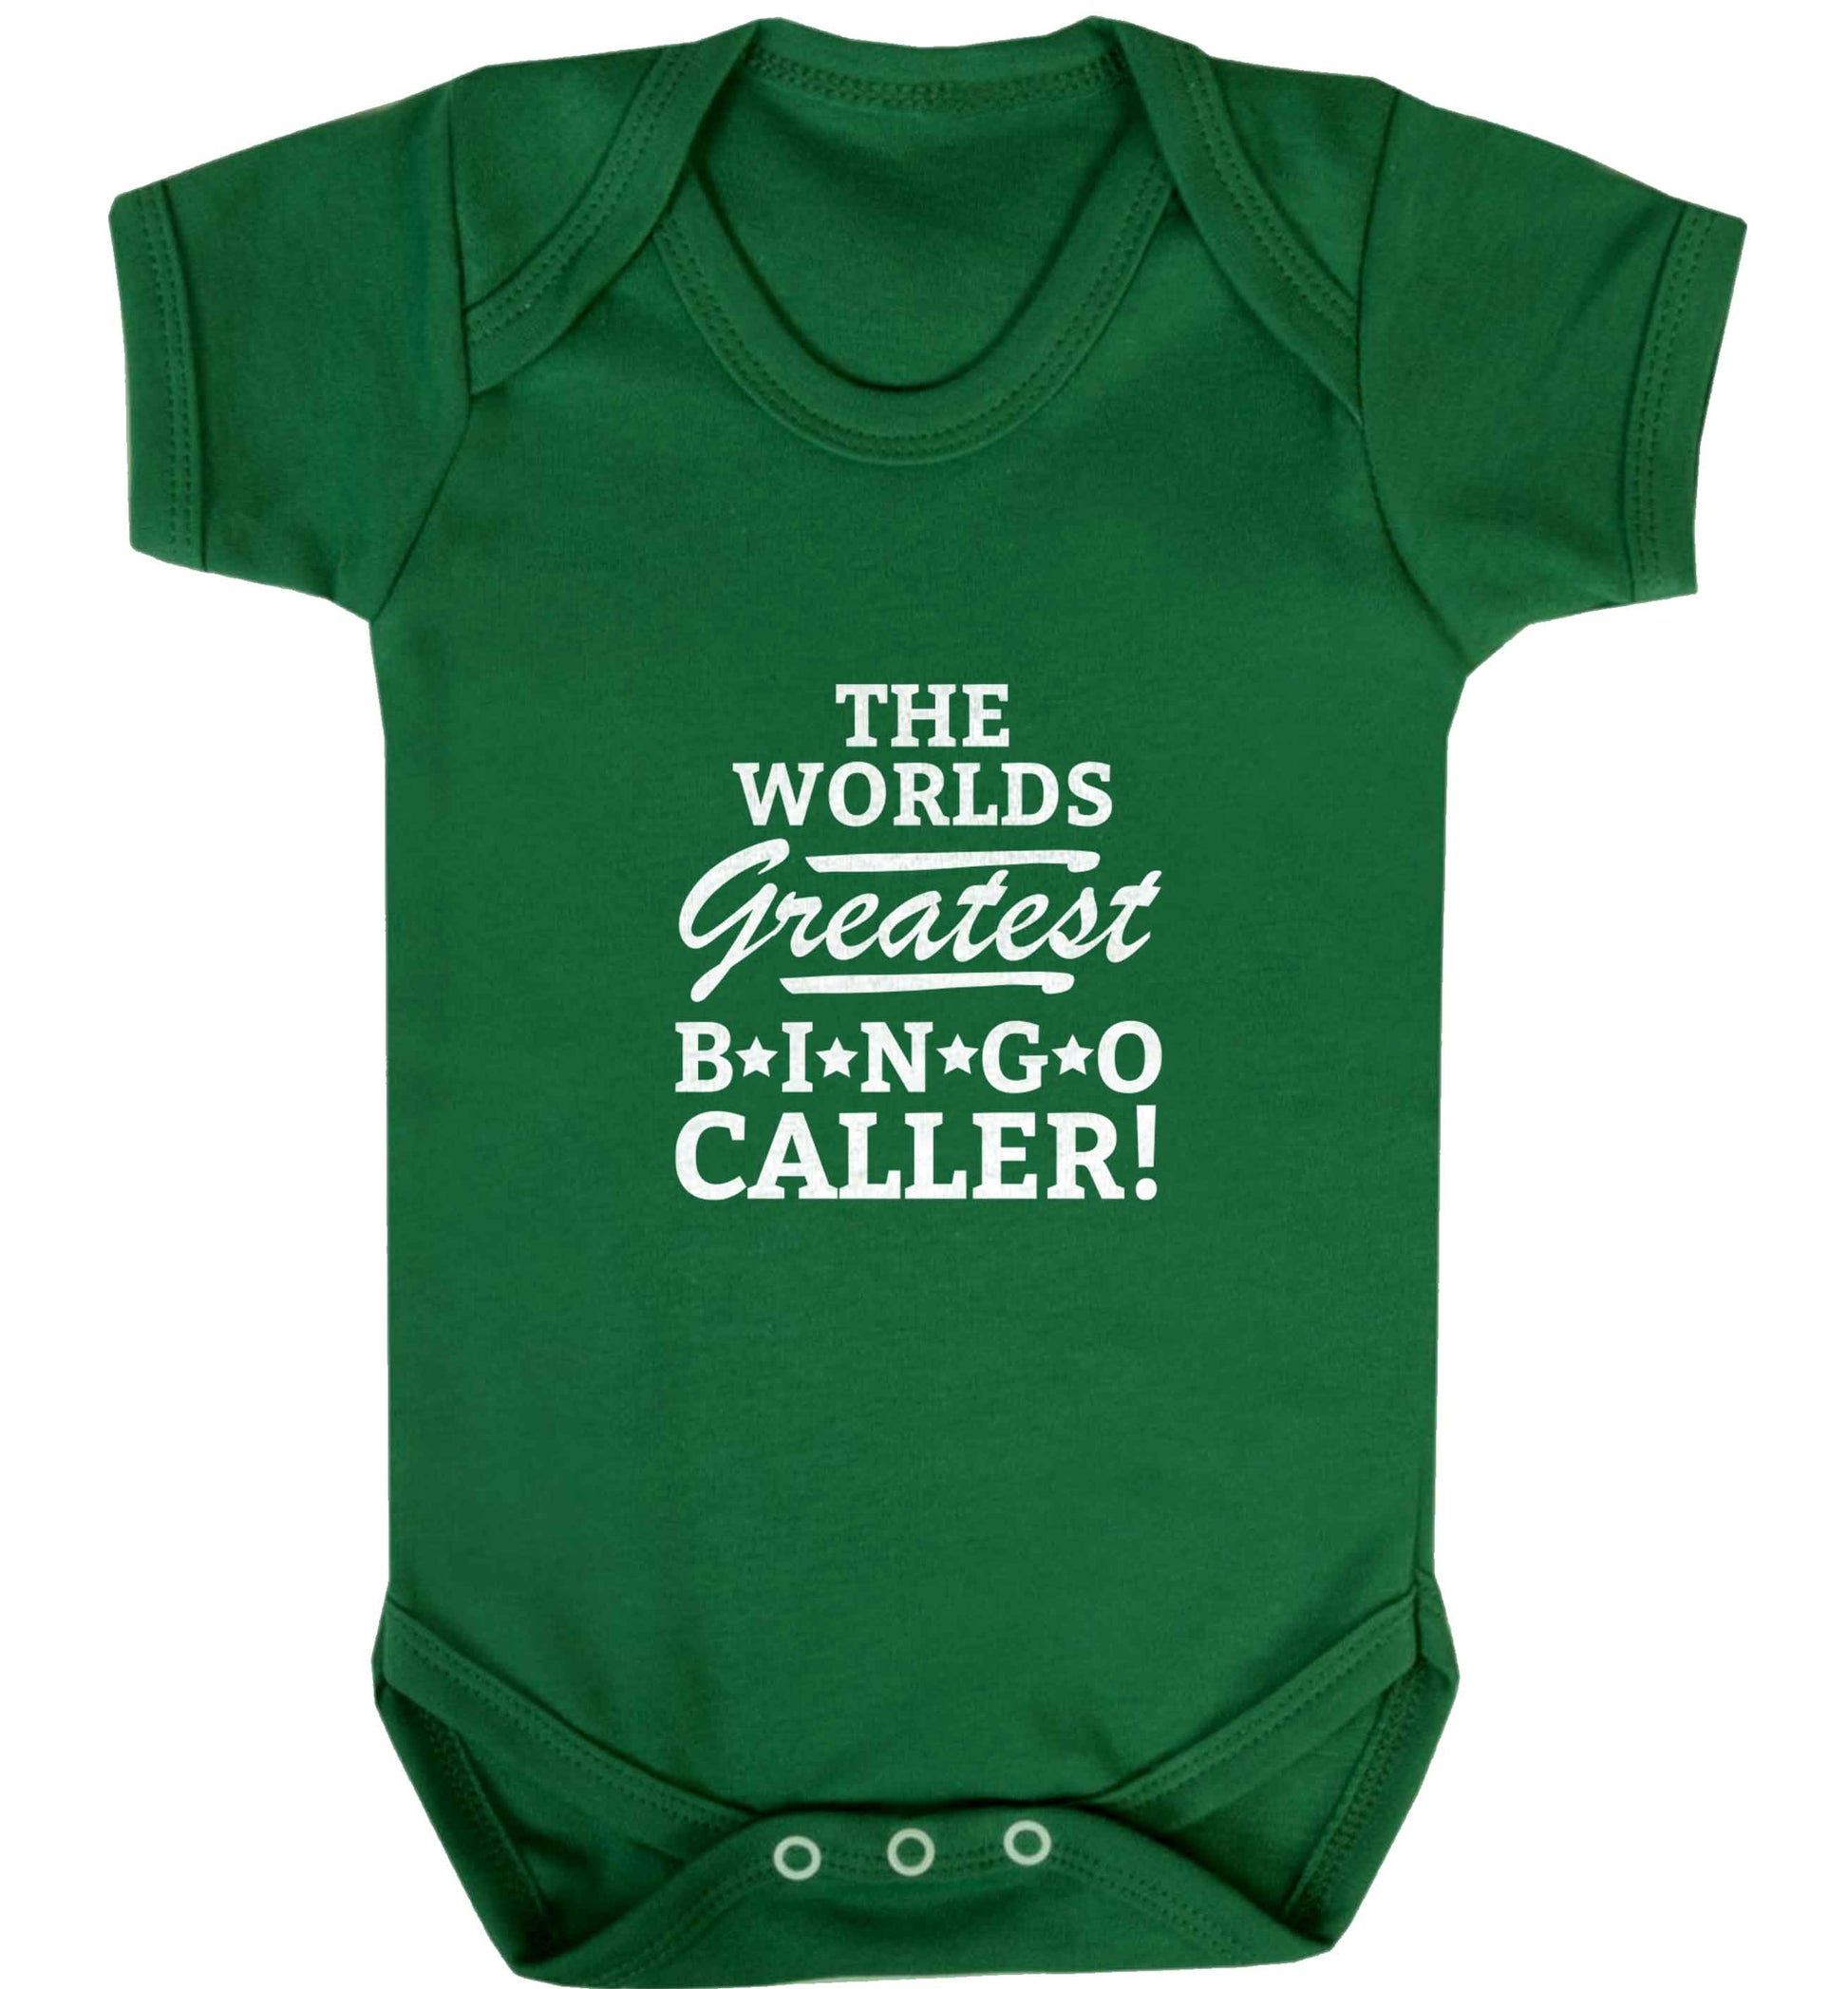 Worlds greatest bingo caller baby vest green 18-24 months